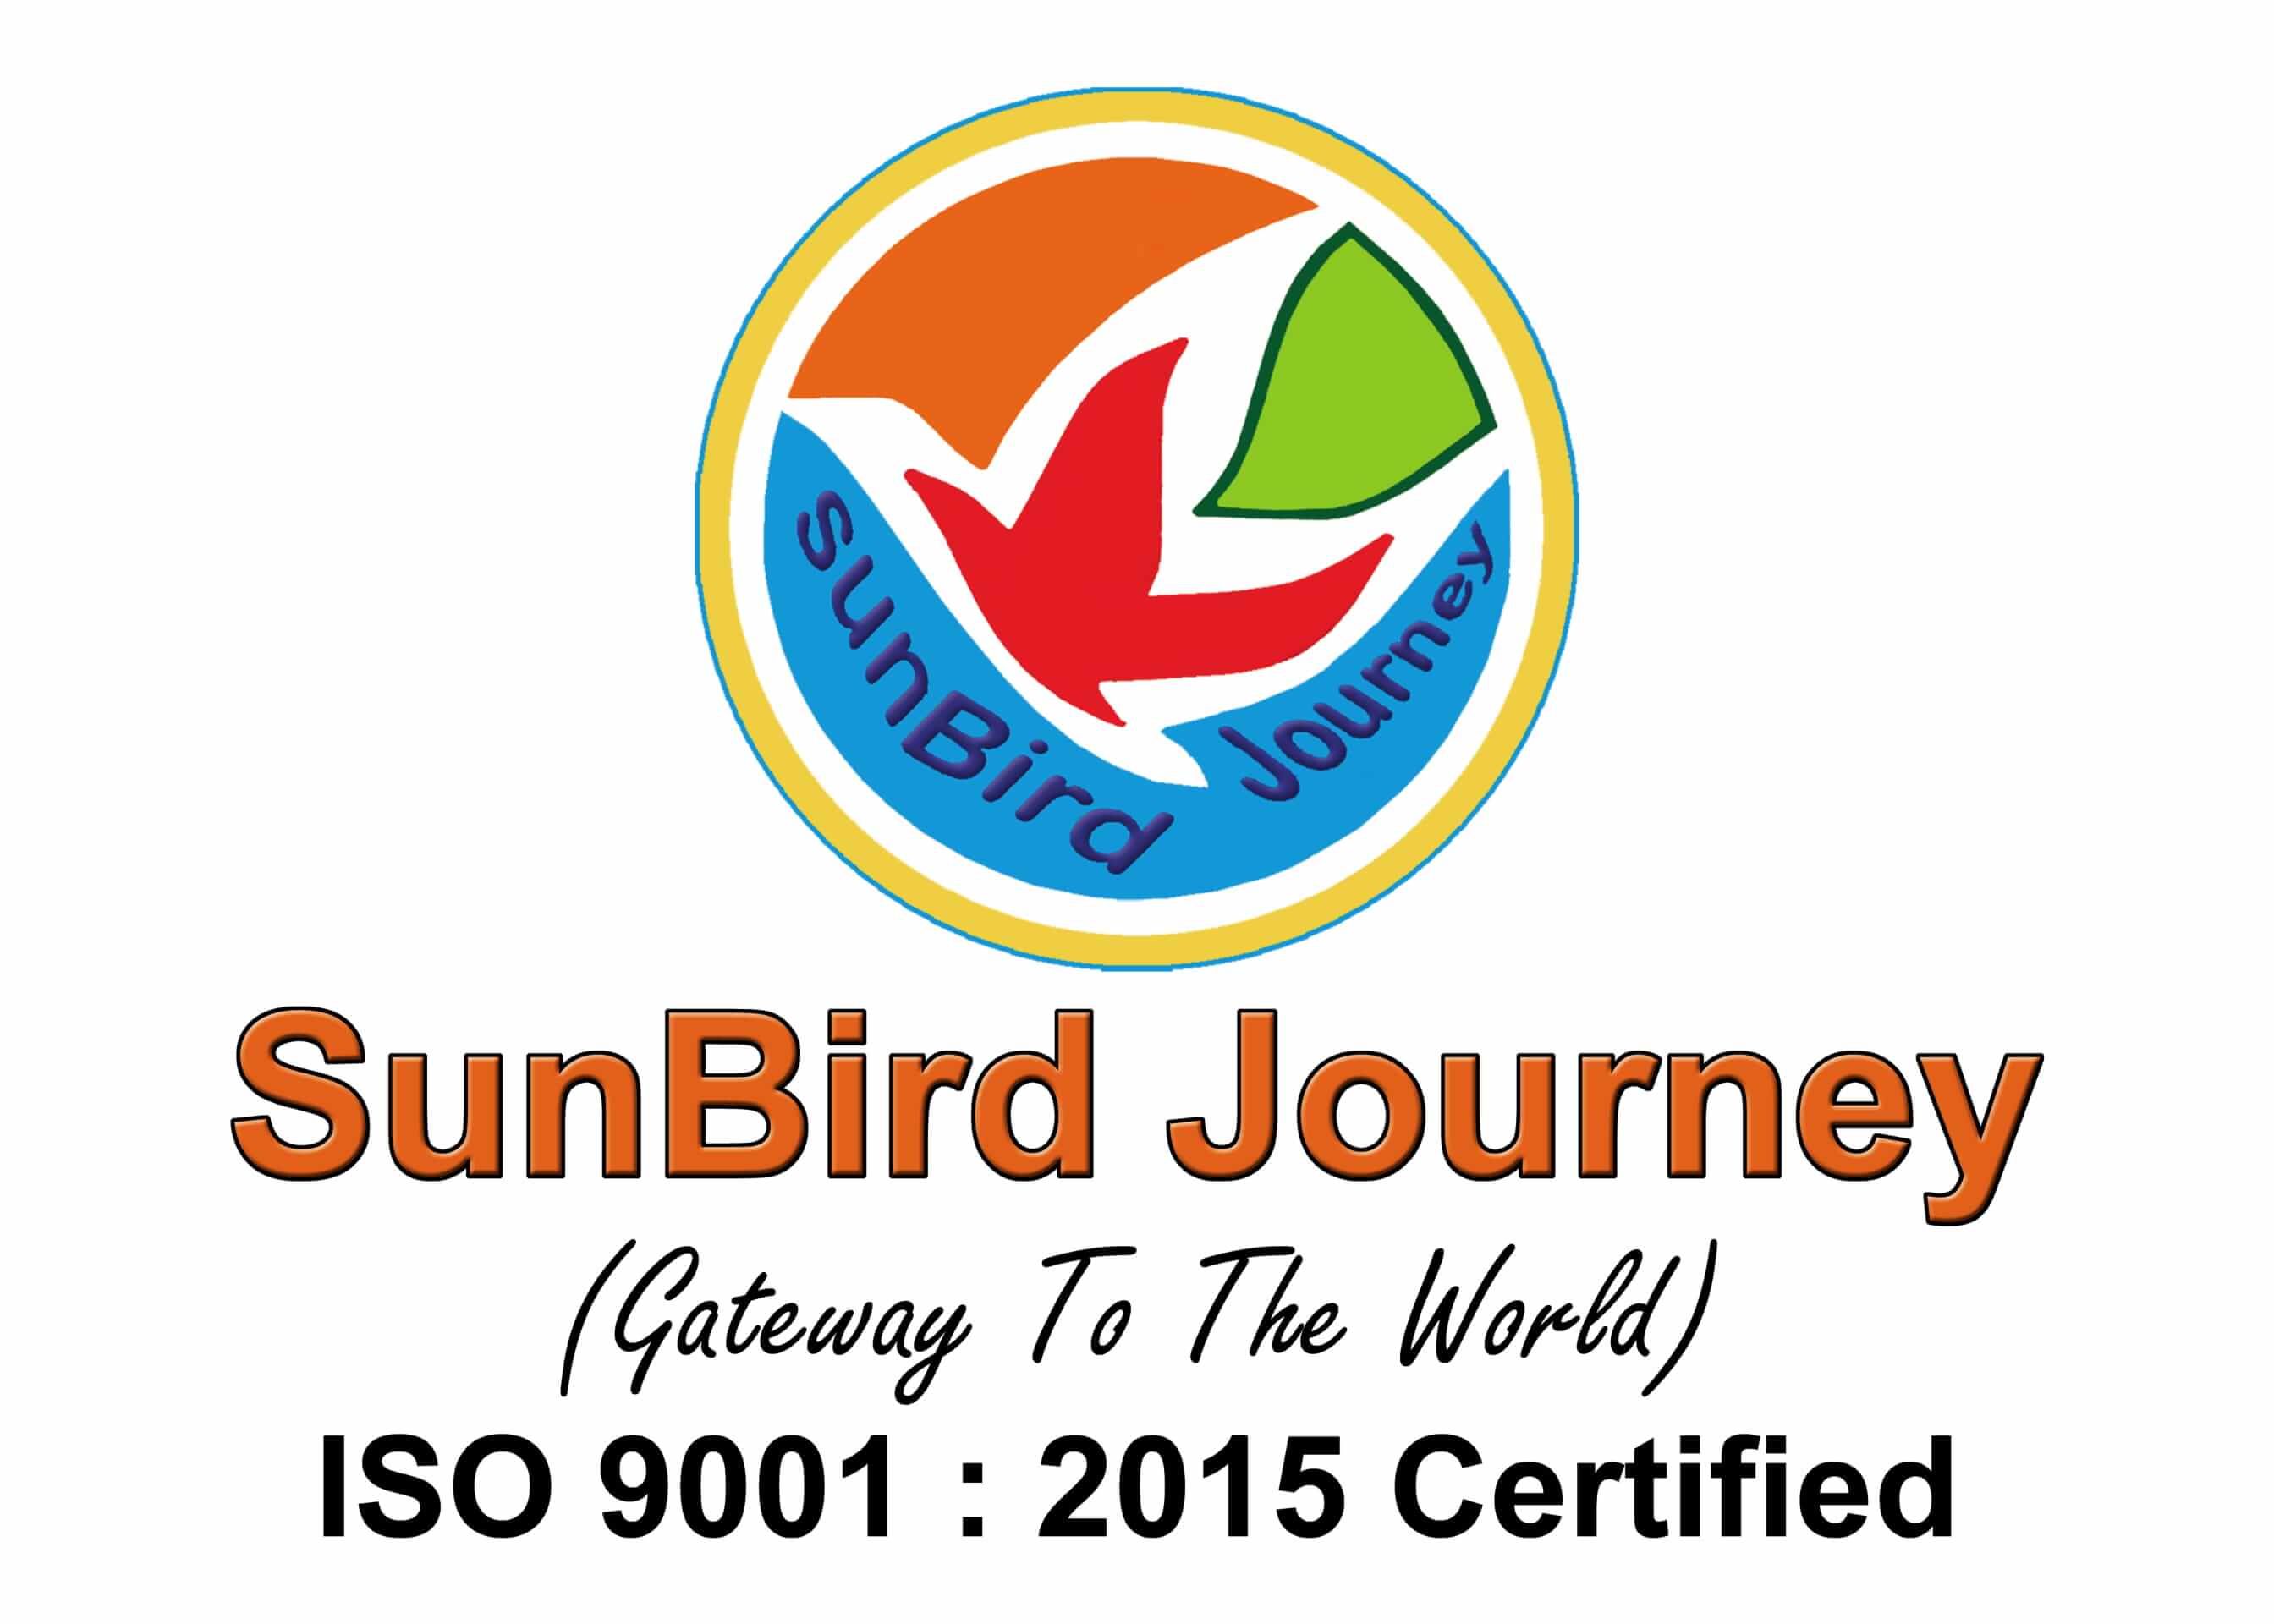 SunBird Journey